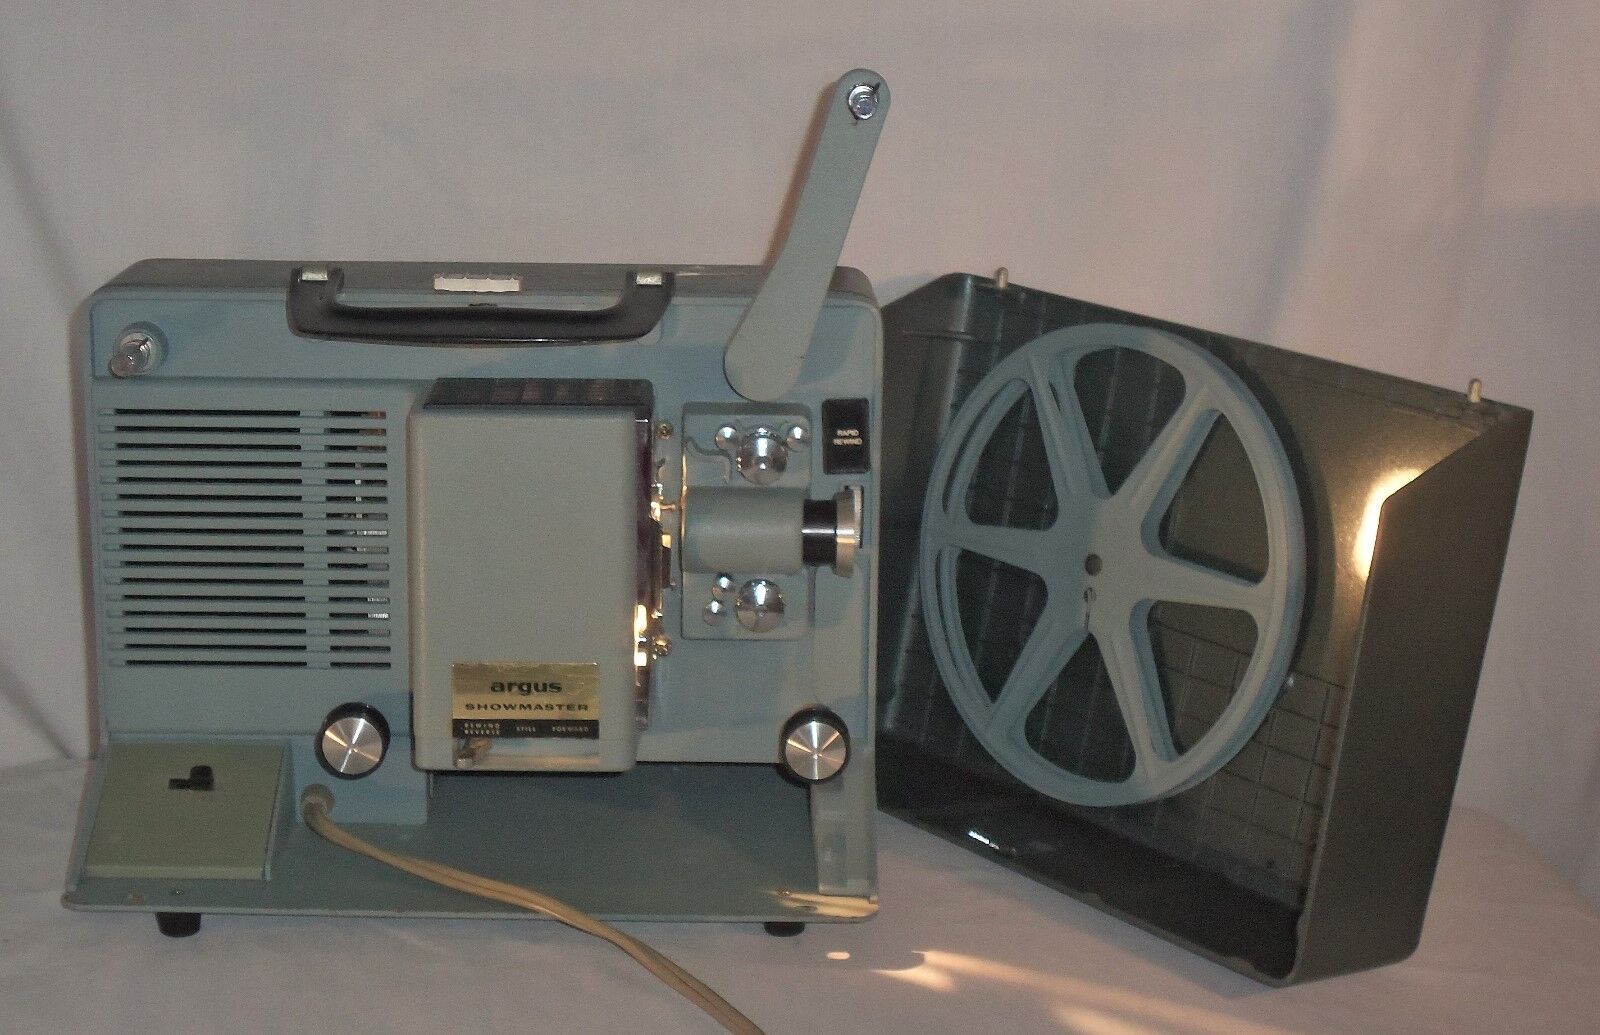 Vtg Argus Showmaster 500 8mm Film Slide Movie Projector Model 450 w/ Reel Case